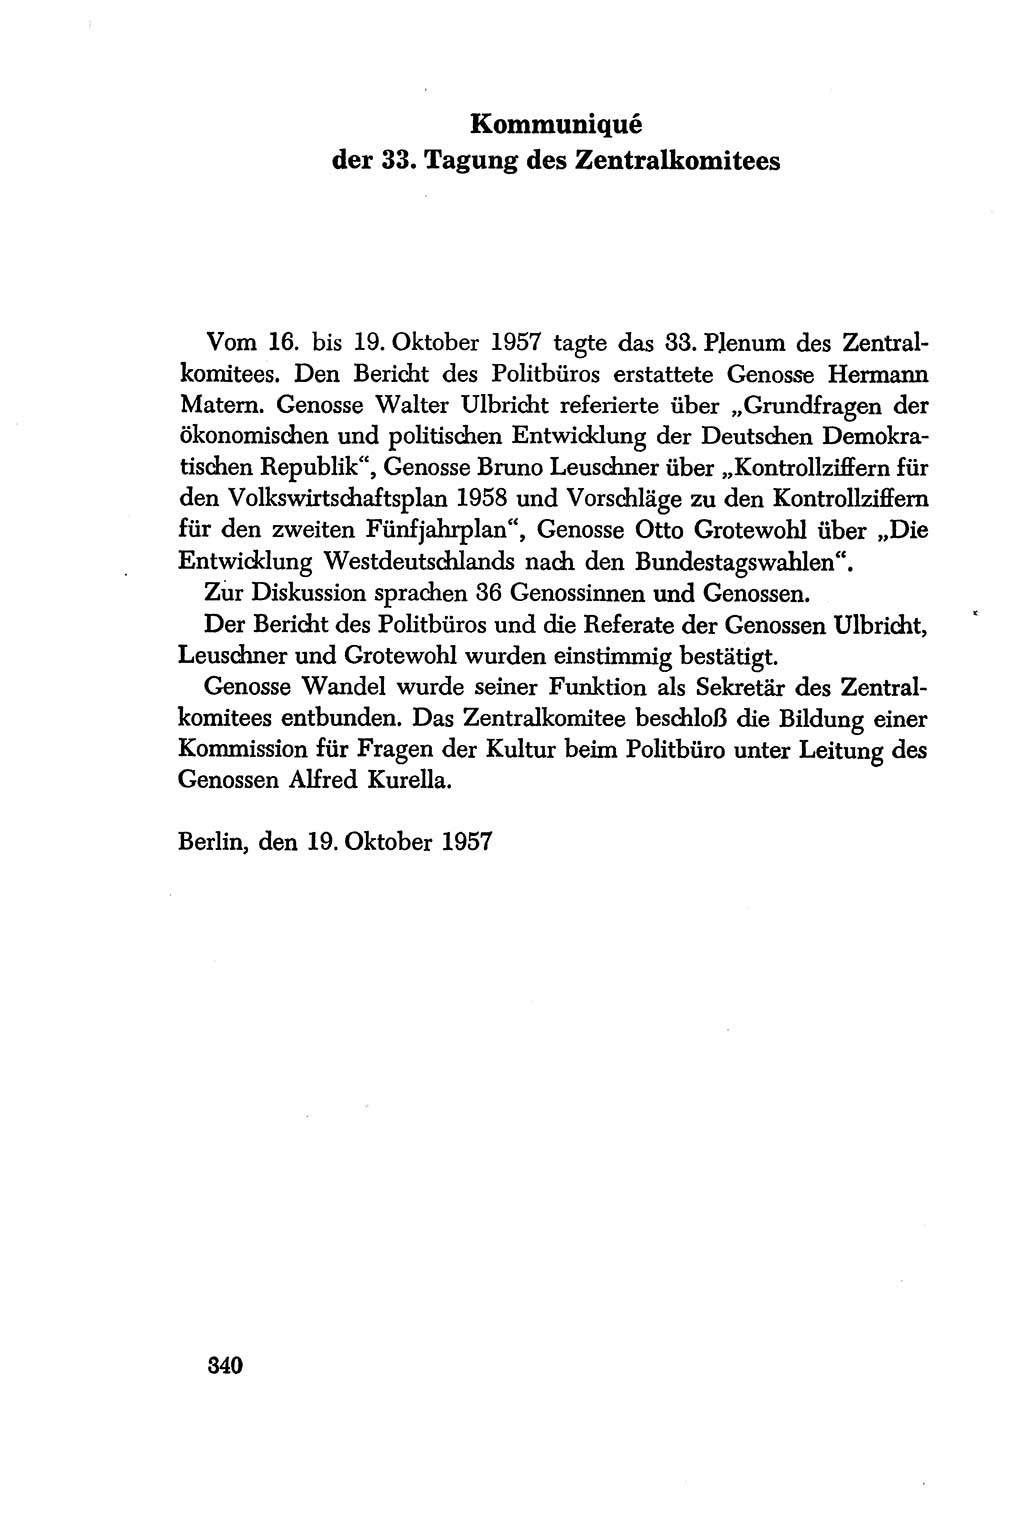 Dokumente der Sozialistischen Einheitspartei Deutschlands (SED) [Deutsche Demokratische Republik (DDR)] 1956-1957, Seite 340 (Dok. SED DDR 1956-1957, S. 340)